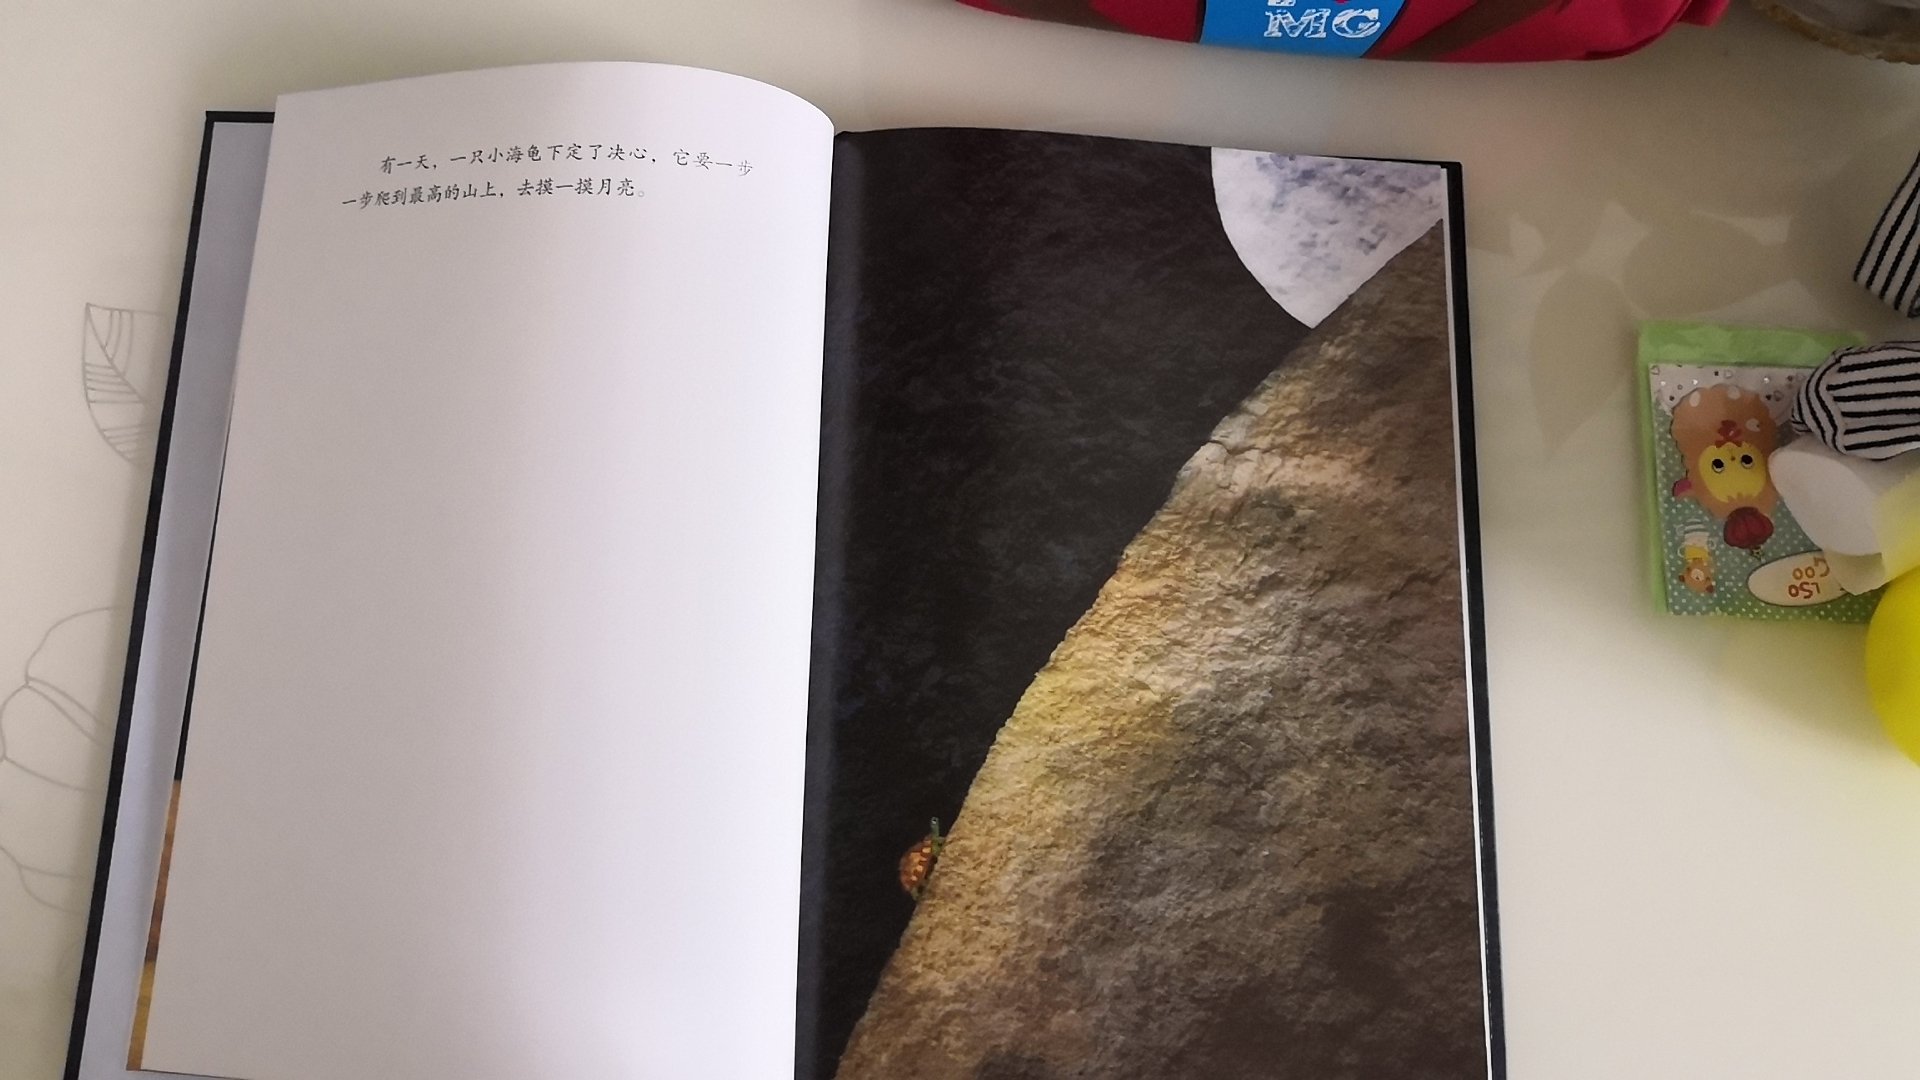 书很精致漂亮，月亮画的像薯片一样。